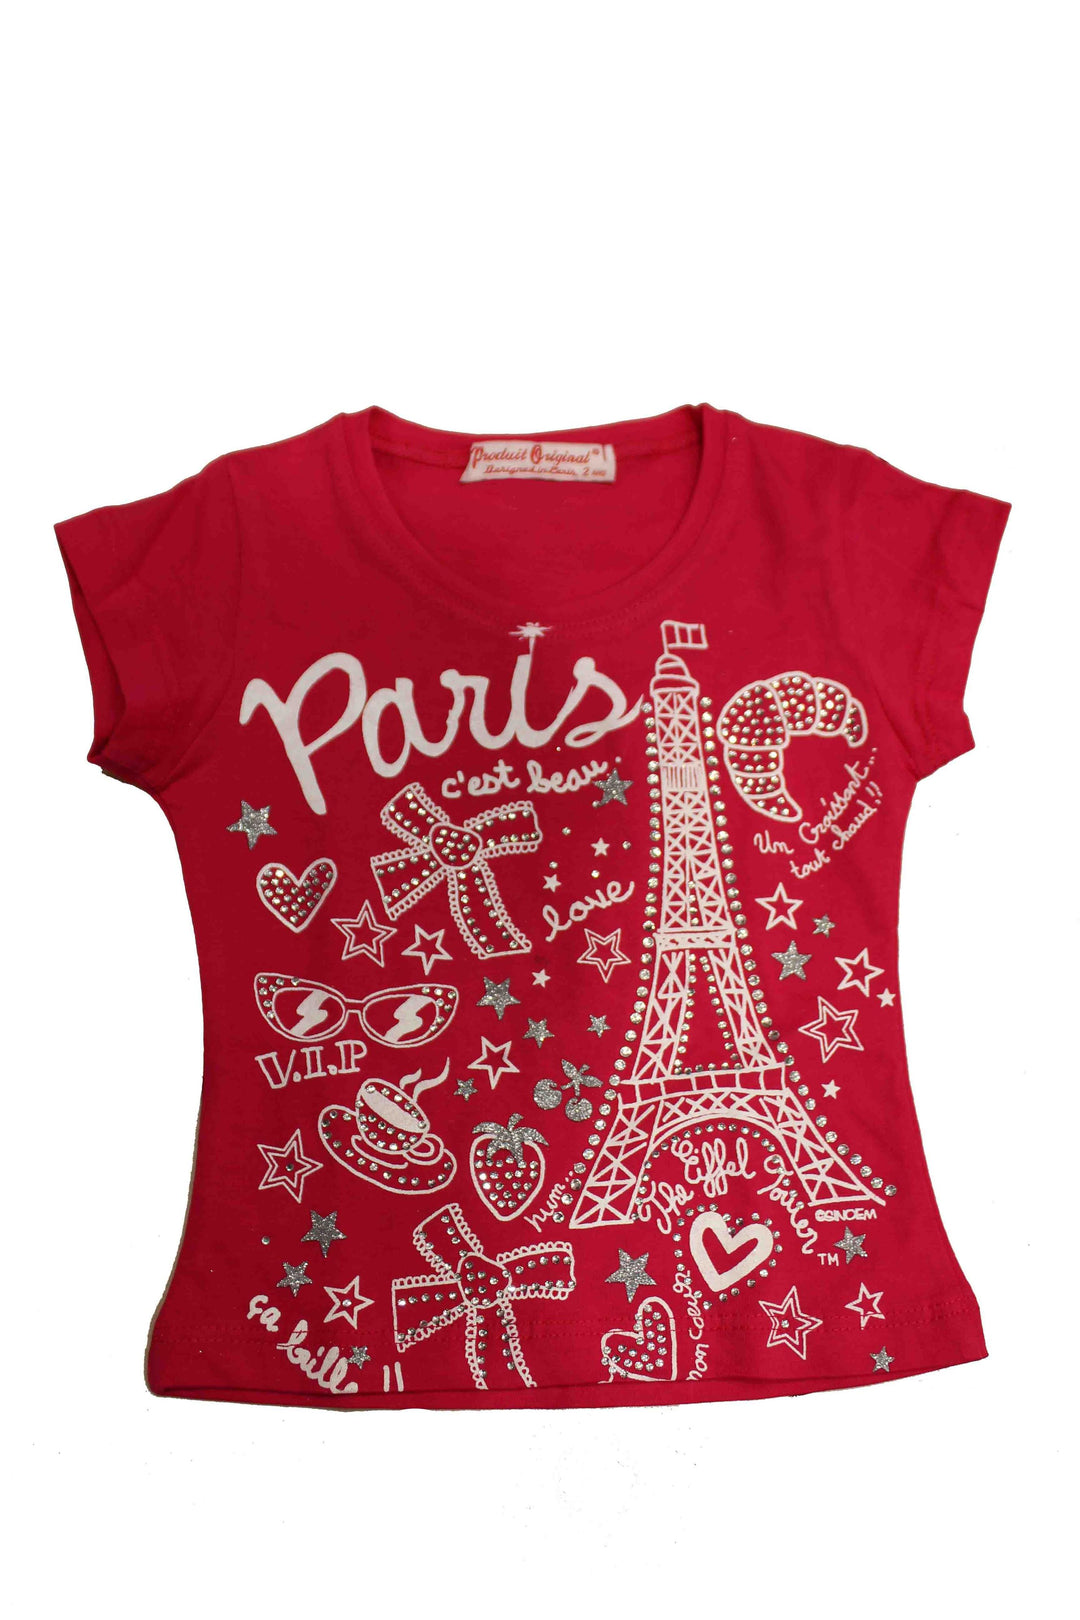 Tee-shirt avec design Tour Eiffel et strass "C'est Beau"